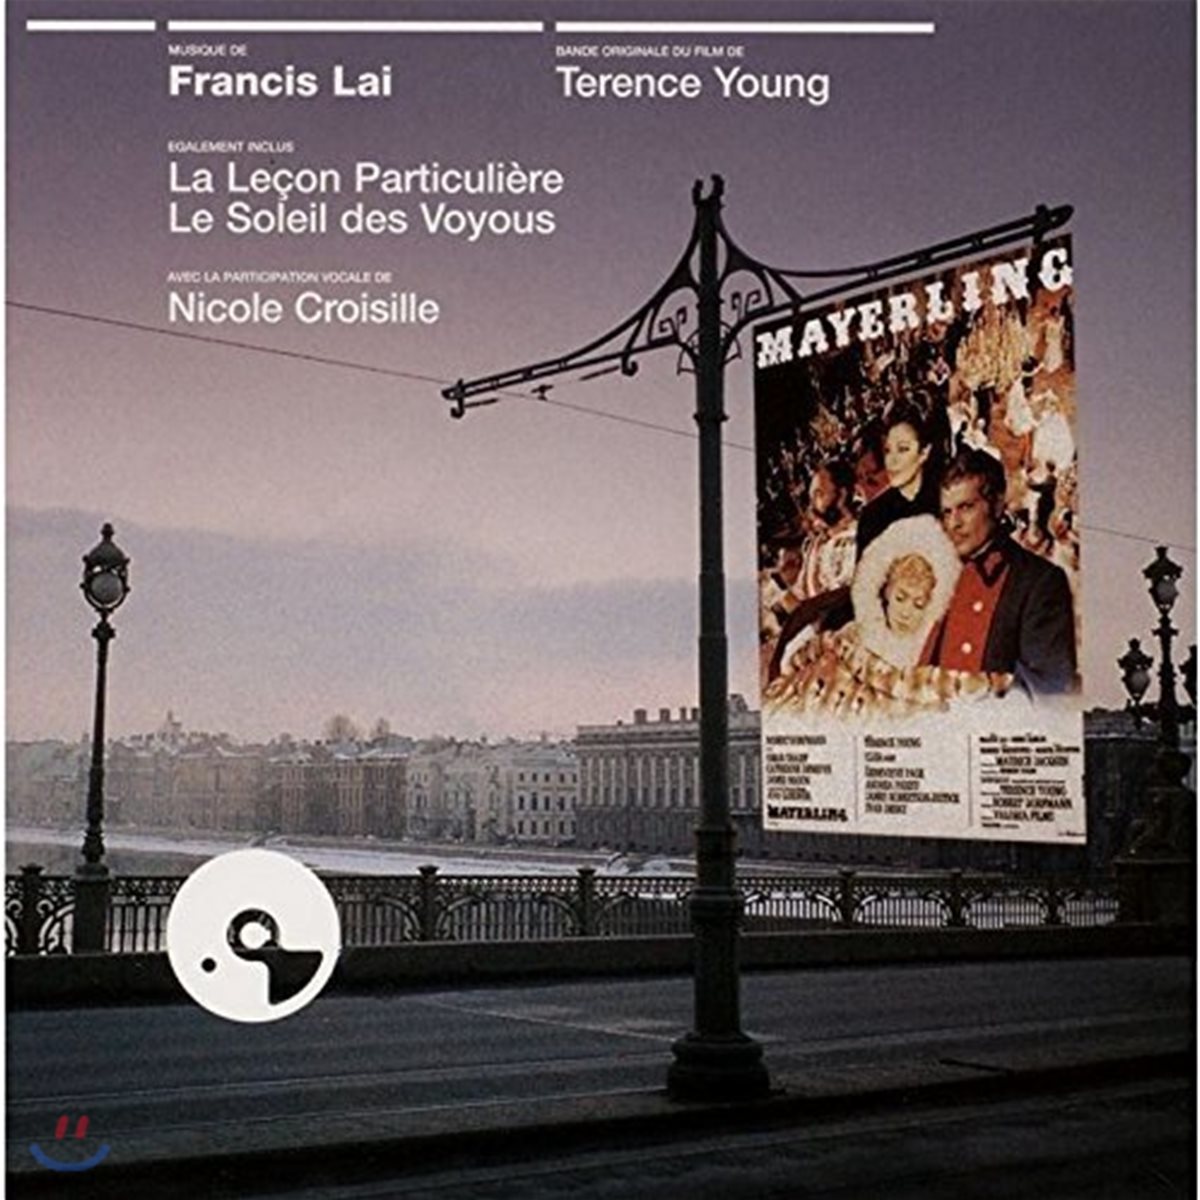 비우 / 개인교수 / 암흑가의 태양 영화음악 (Mayerling / La Lecon Particuliere / Le Soleil des Voyous OST by Francis Lai 프란시스 레이)